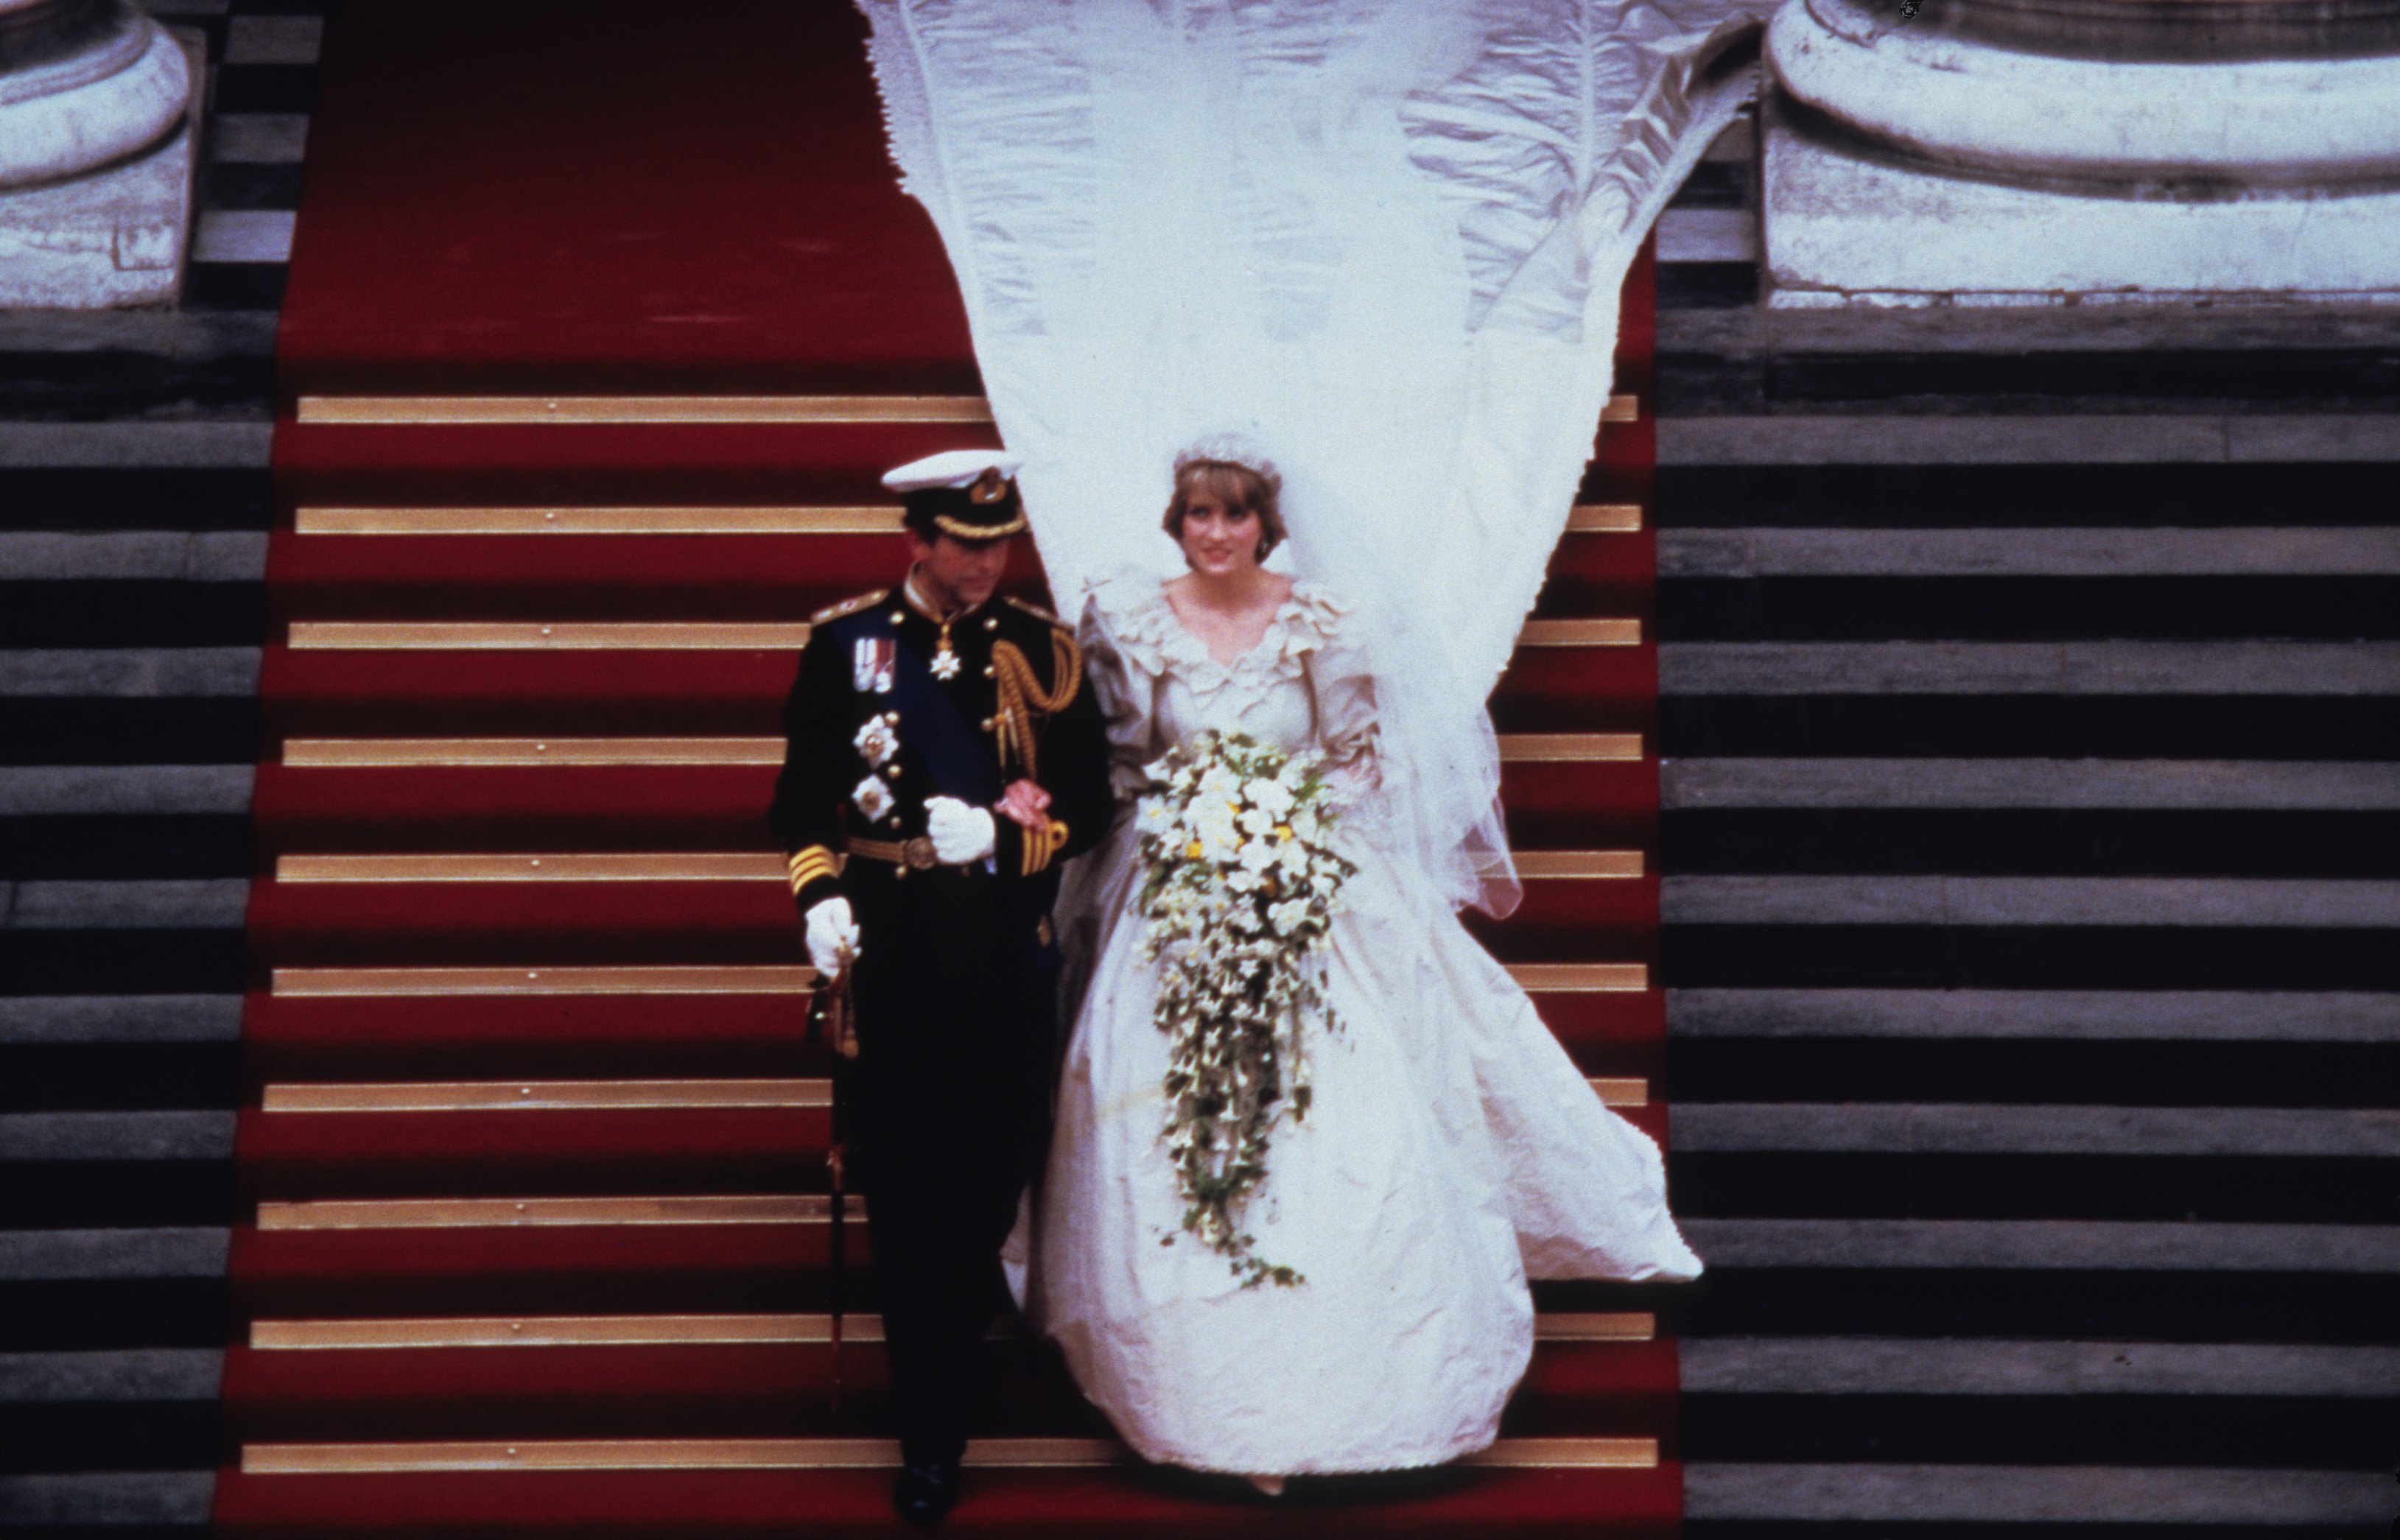 La boda de Lady Di y el príncipe Carlos se llevó a cabo el 29 de Julio de 1985 (Getty Images)